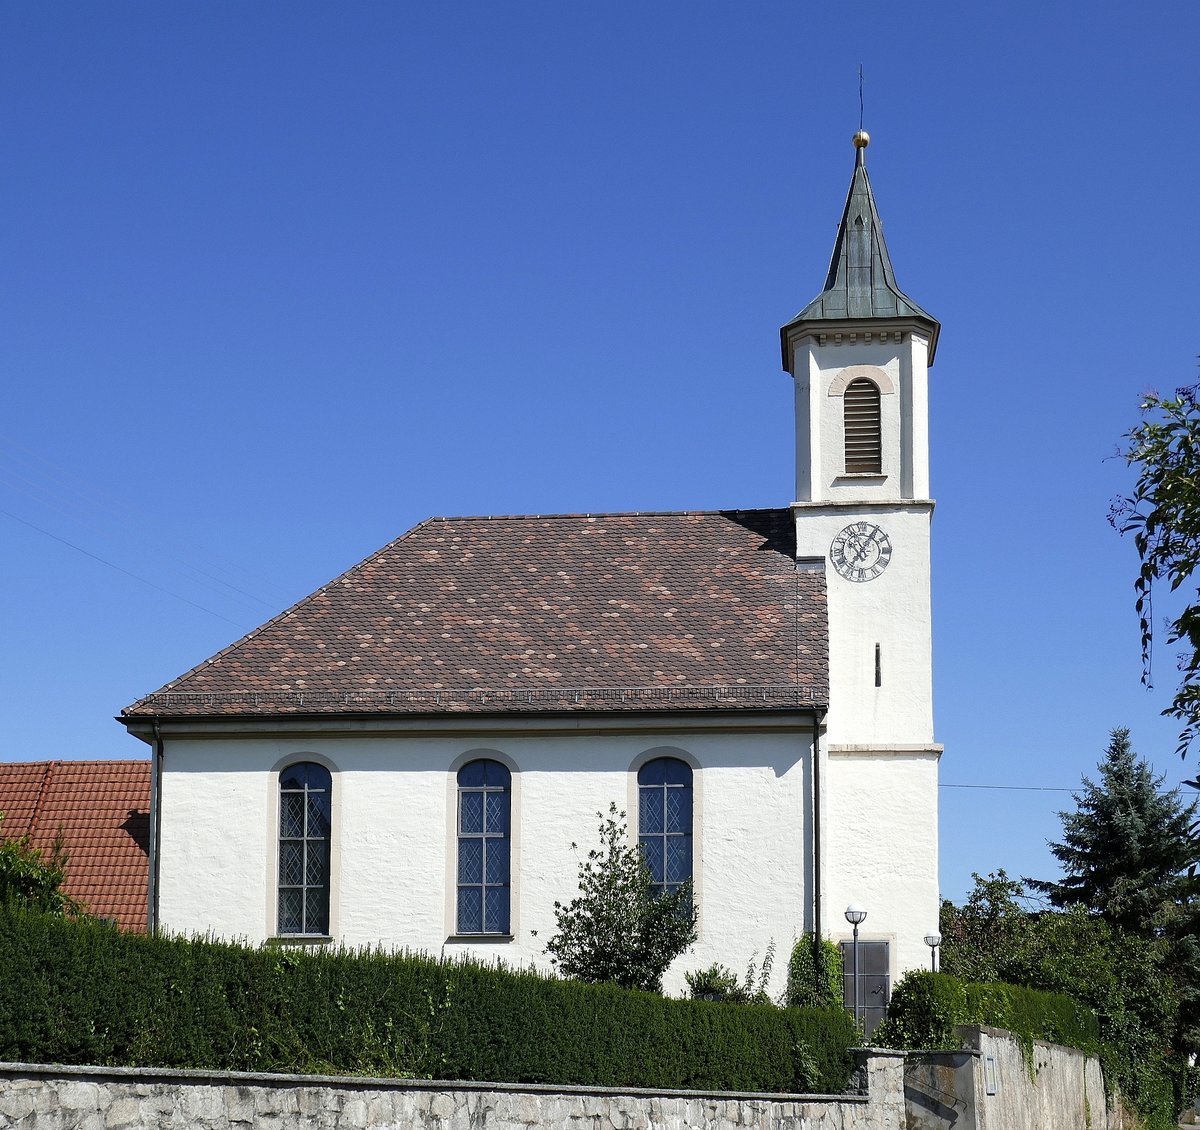 Gallenweiler im Markgrflerland, die evangelische Kirche von 1793, der Turmbau stammt aus den Jahren 1863-66, Aug.2019